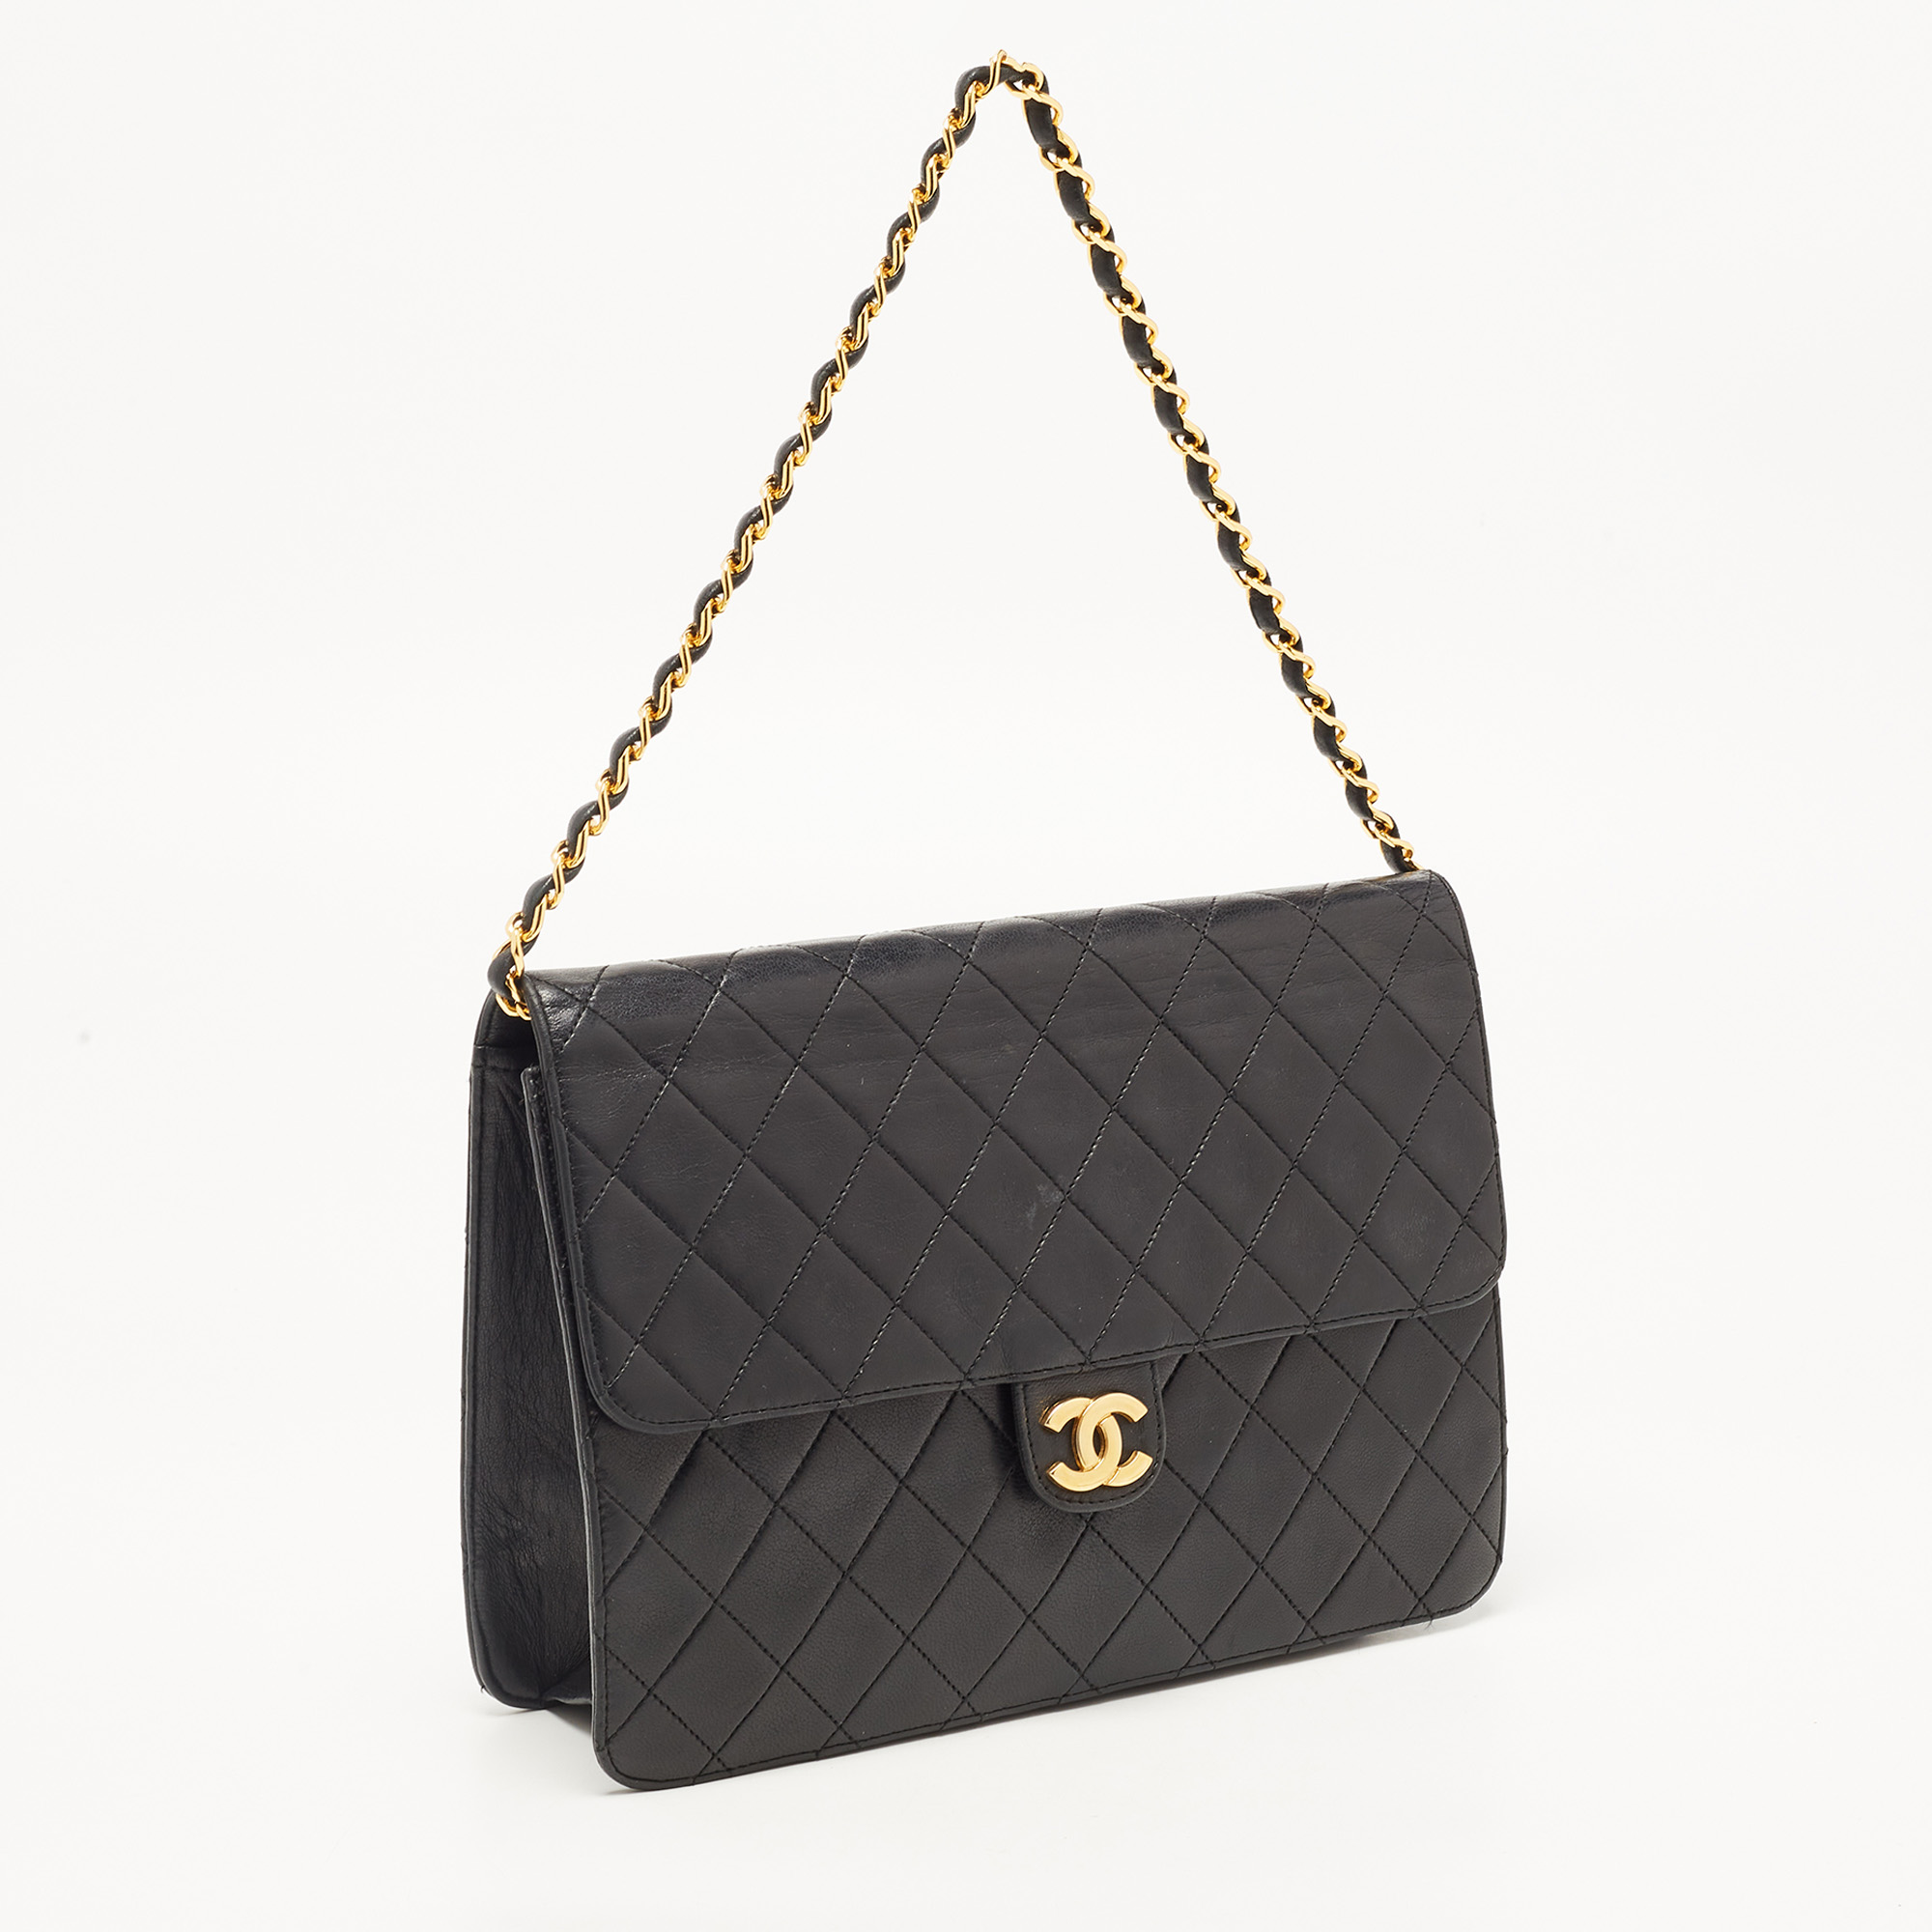 Chanel Black Leather Vintage CC Square Flap Shoulder Bag